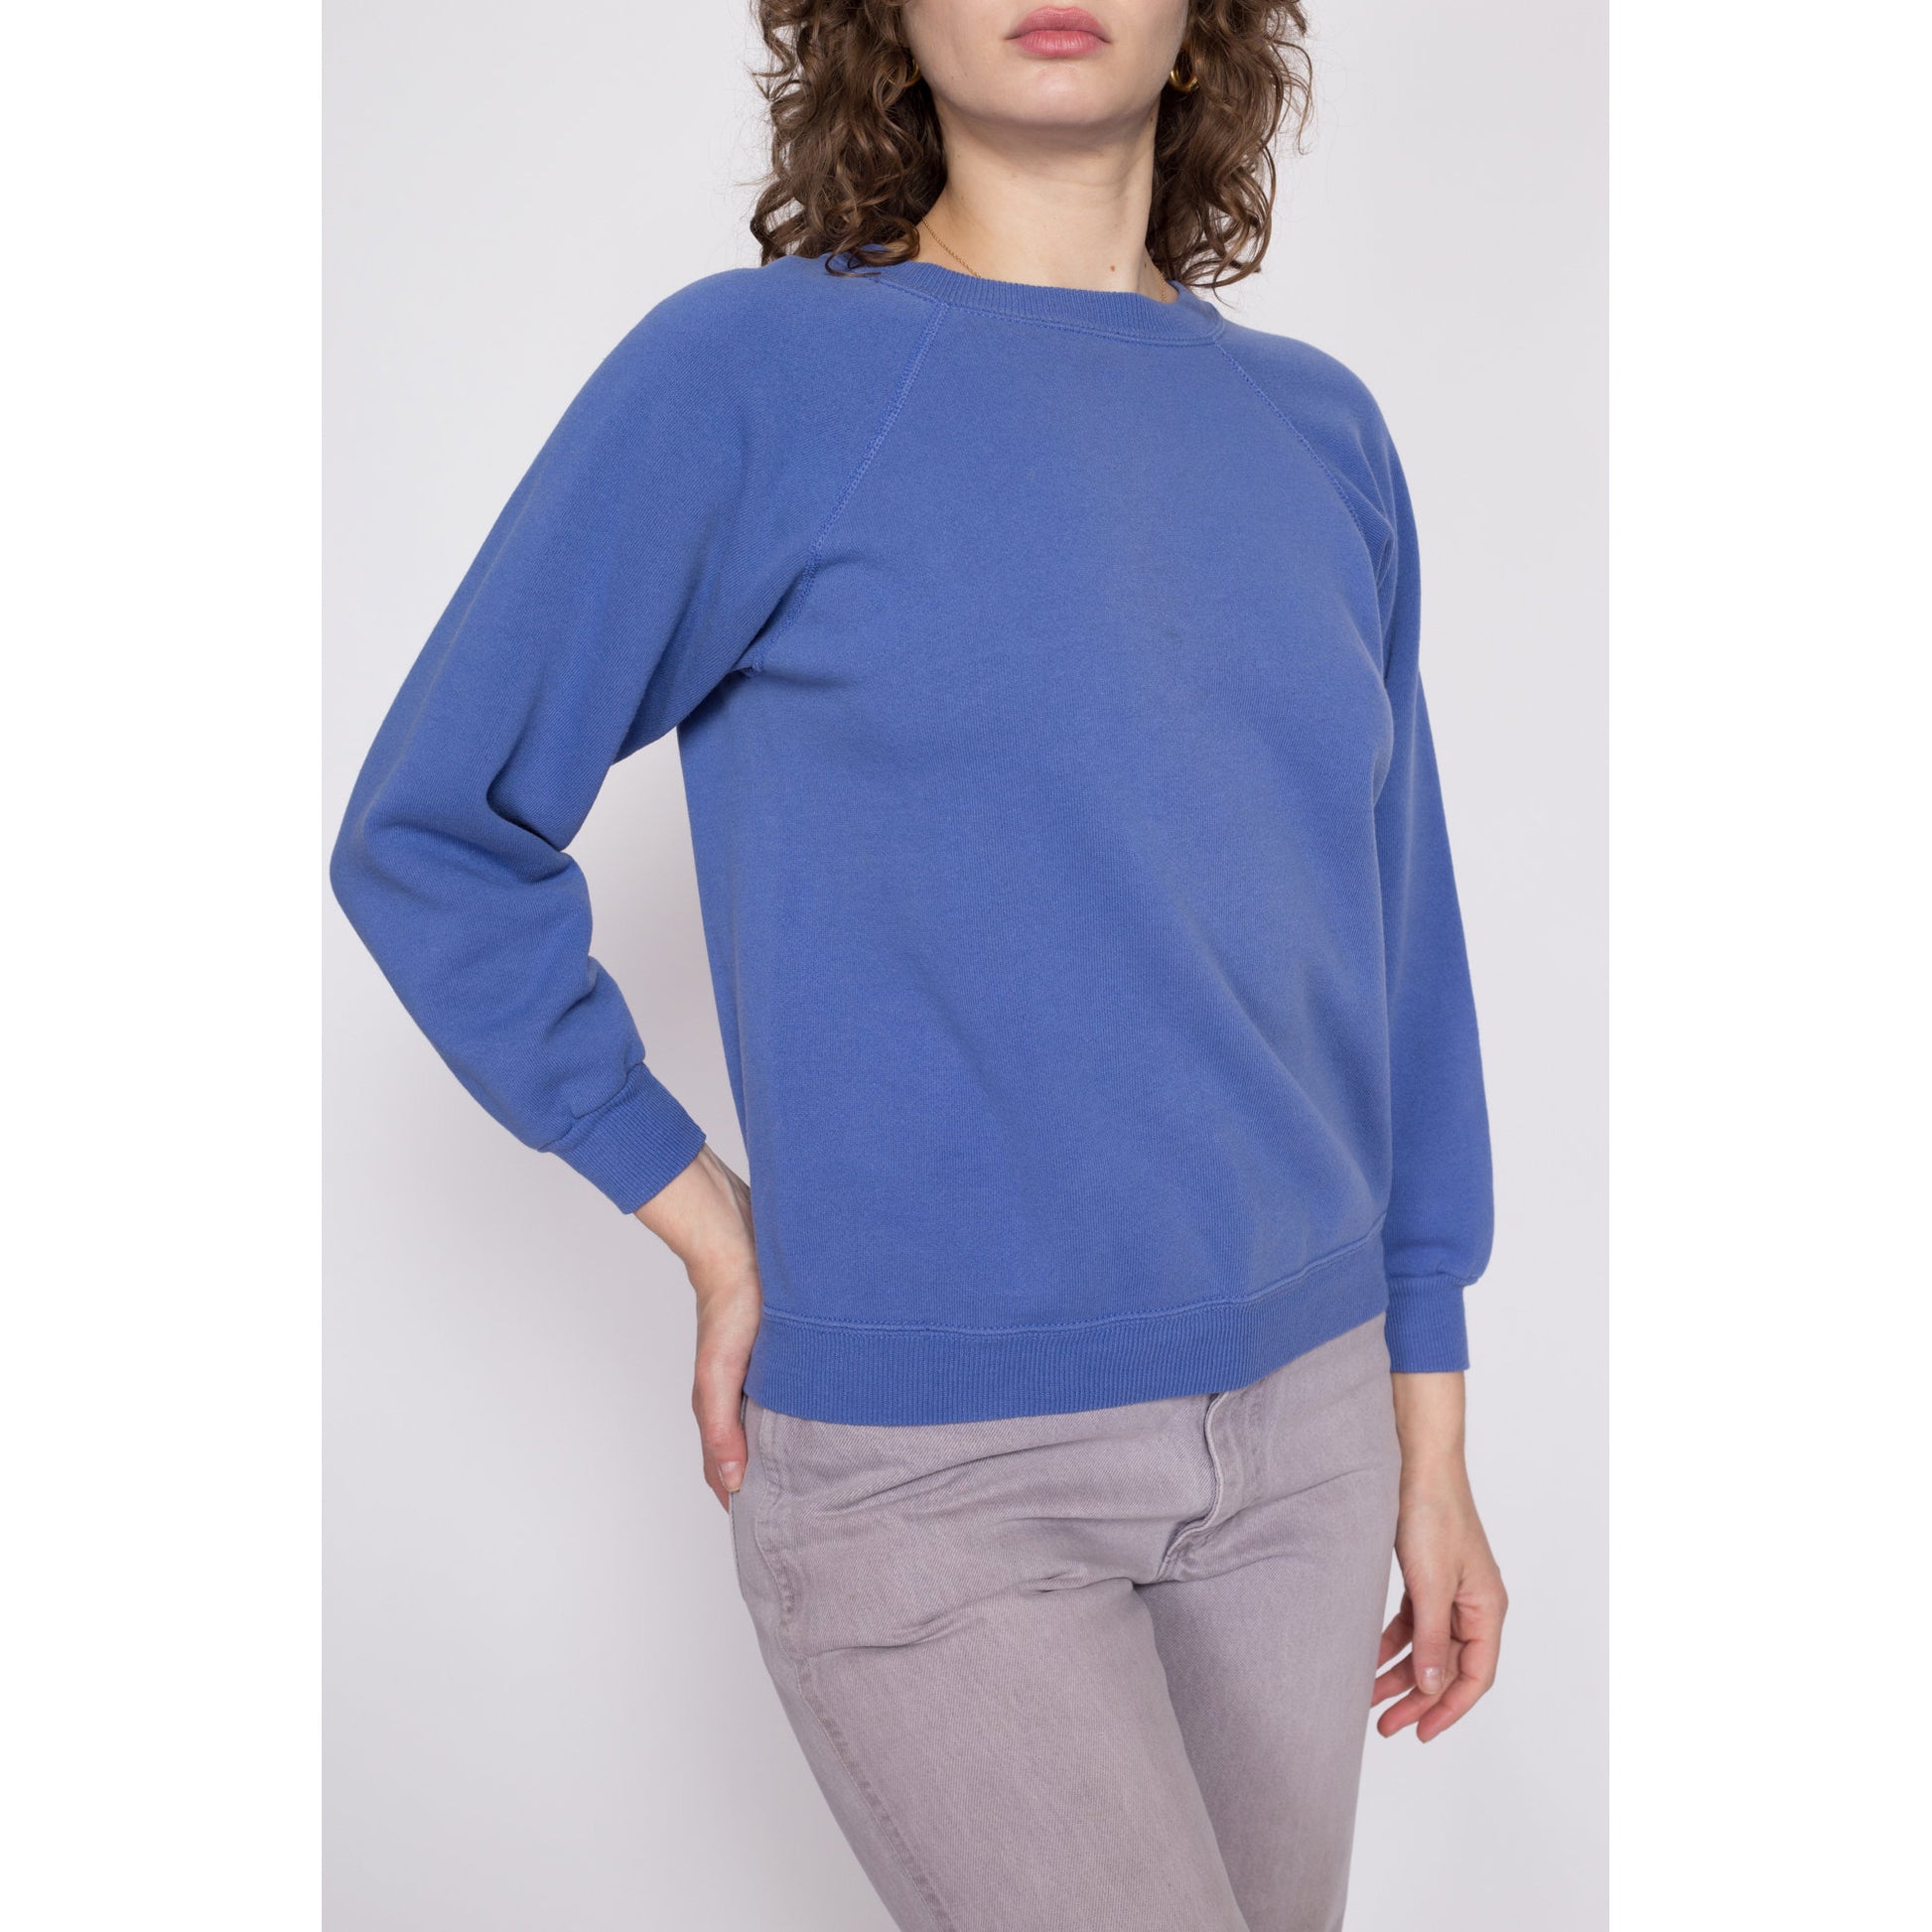 90s Periwinkle Raglan Sleeve Sweatshirt - Medium – Flying Apple Vintage